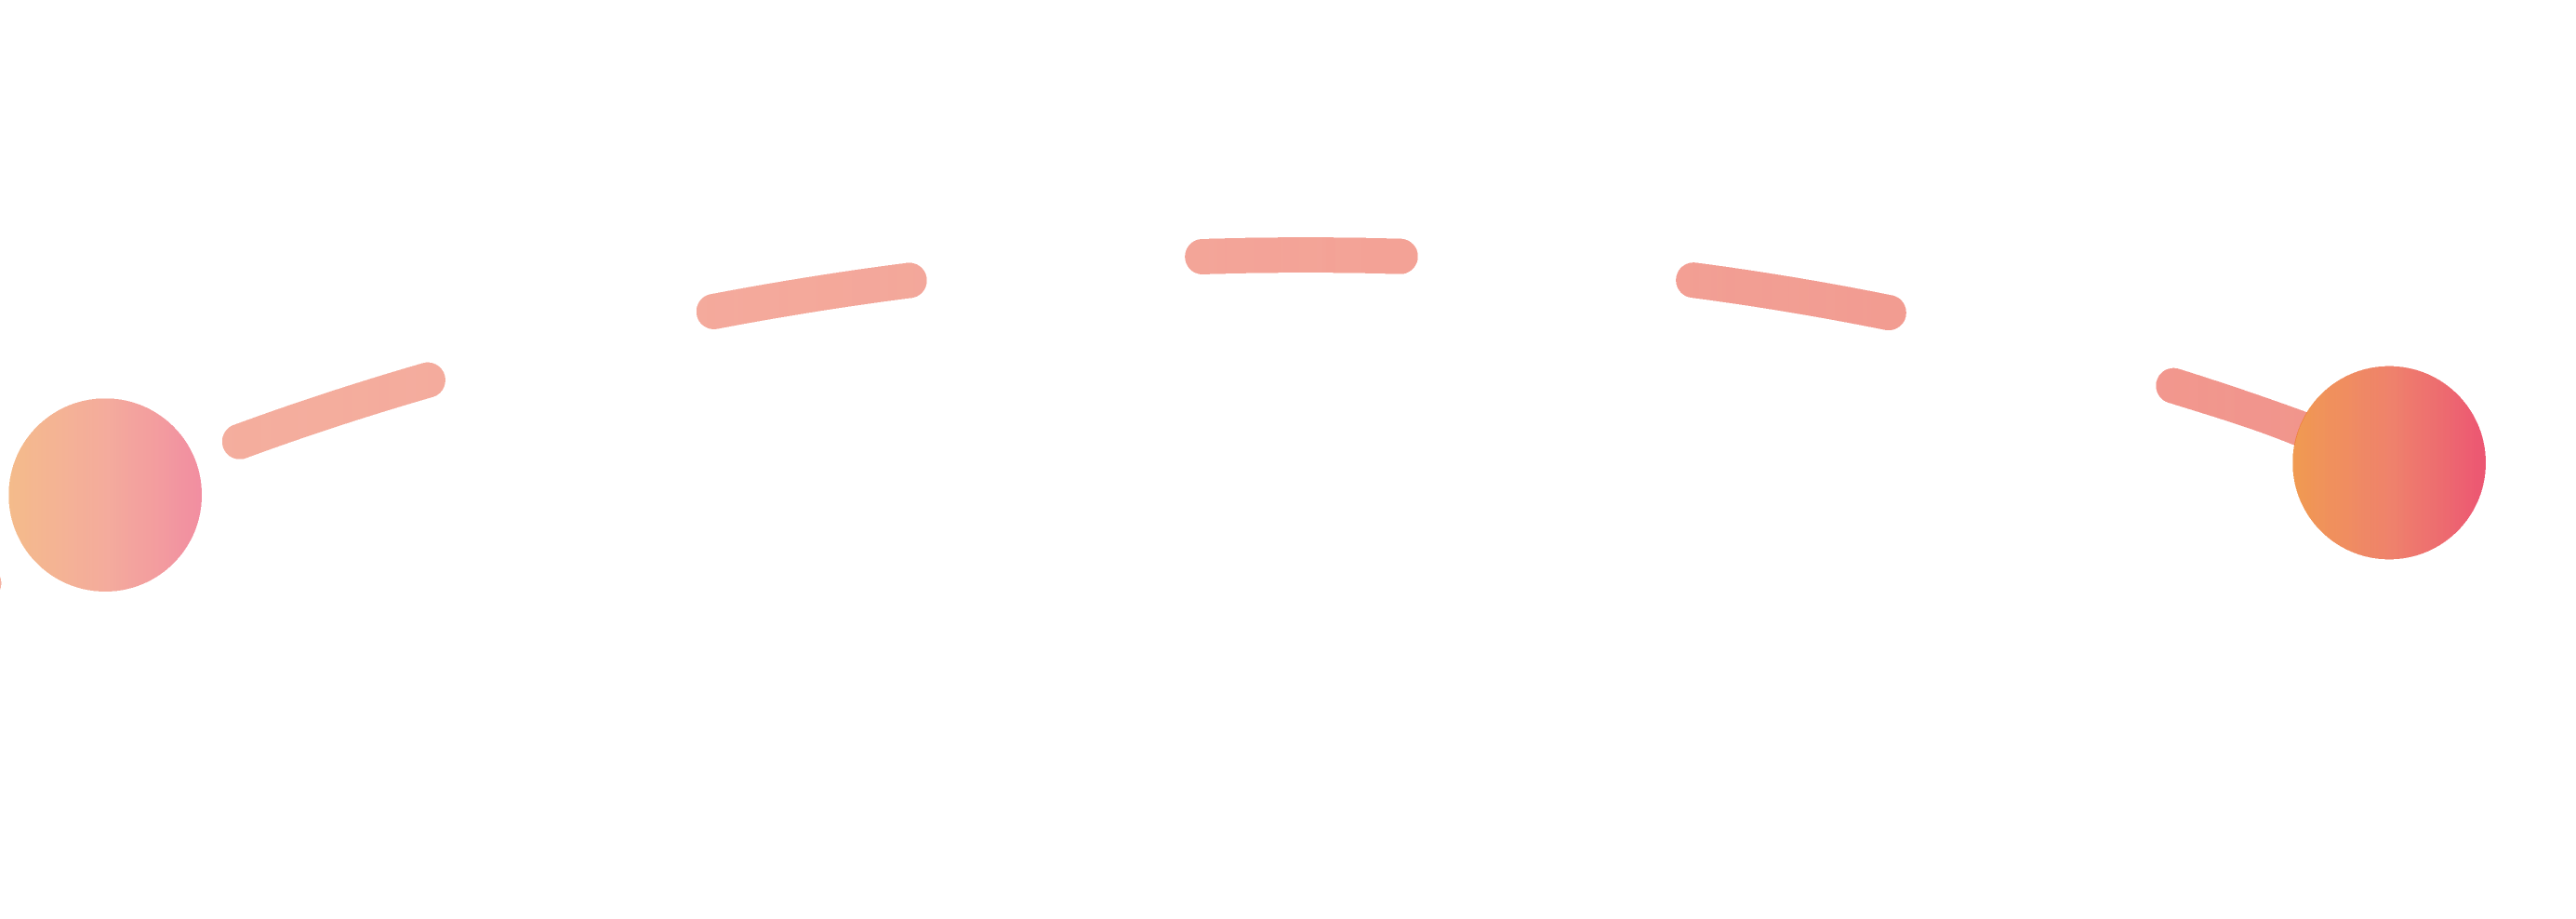 Linea arancione che rappresenta la quarta fase del processo di candidatura.